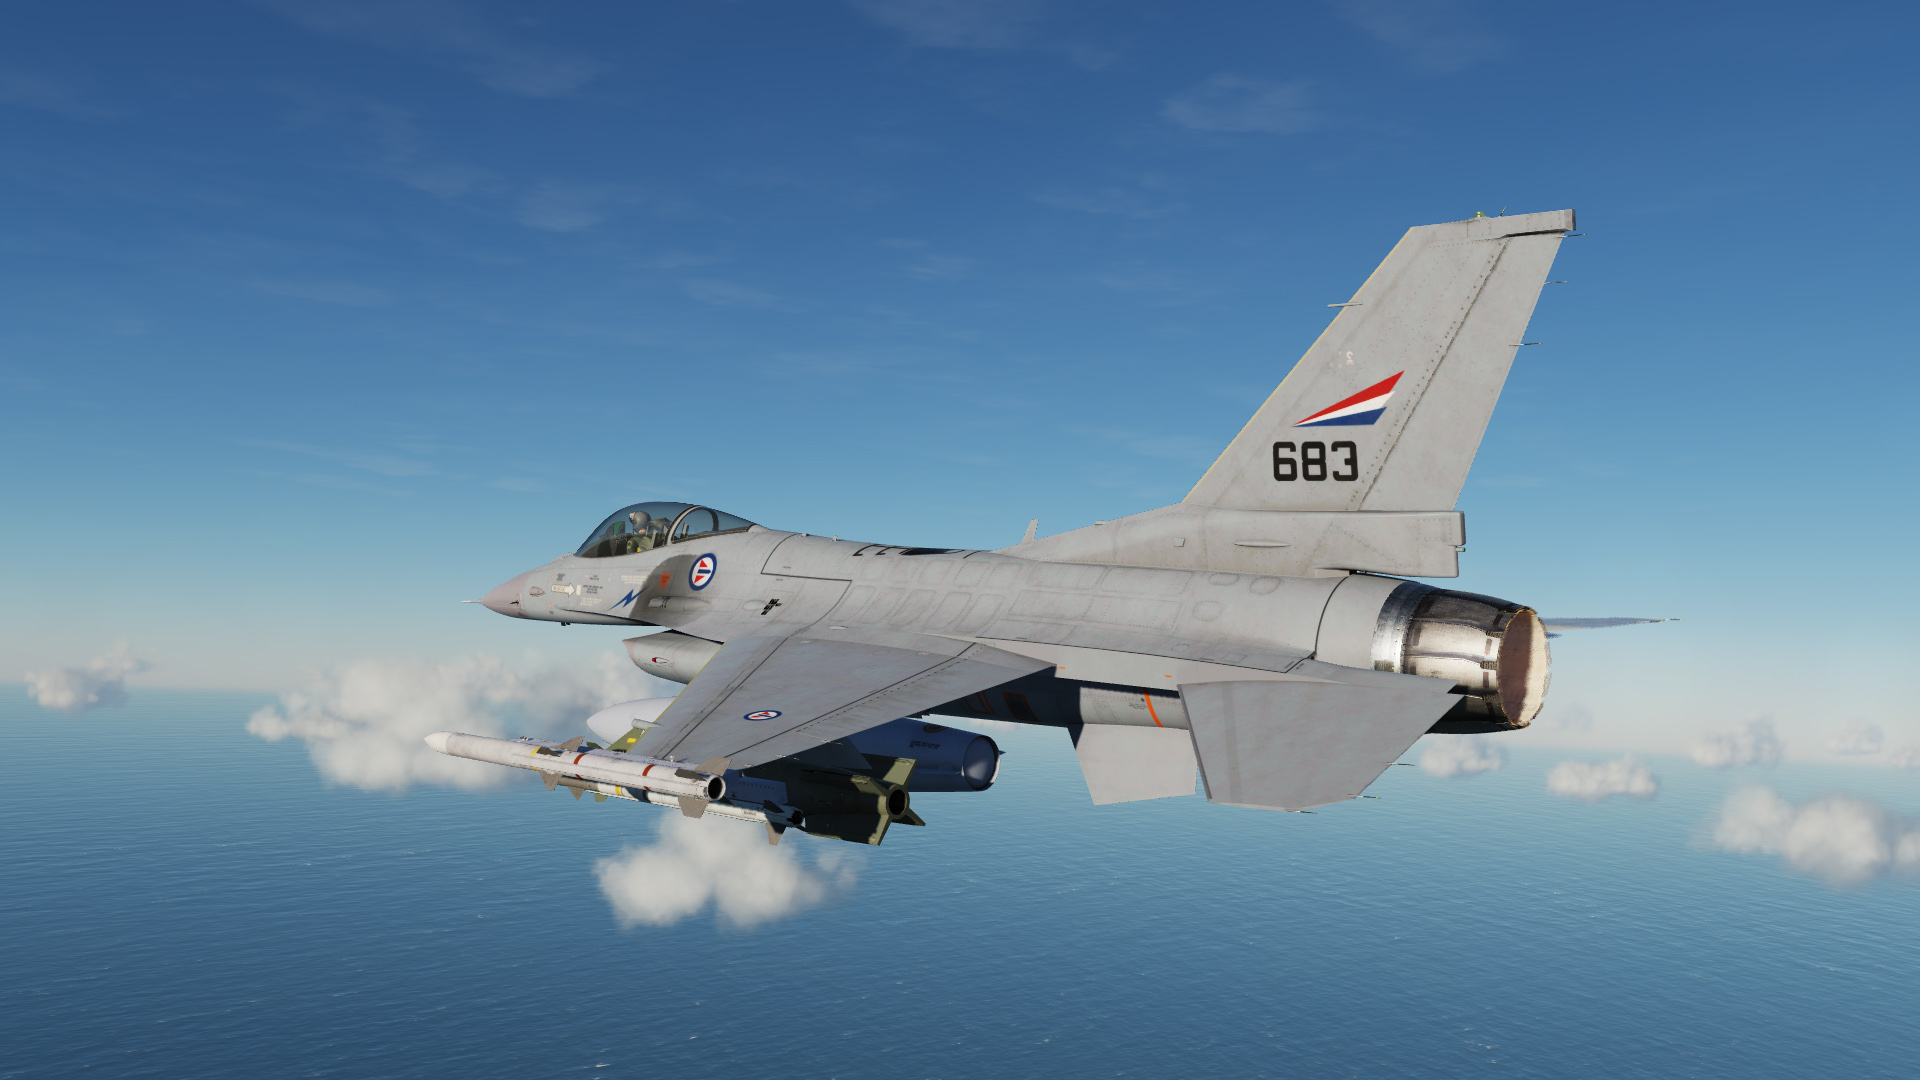 F-16C - RNoAF - 683 - 331 sqn